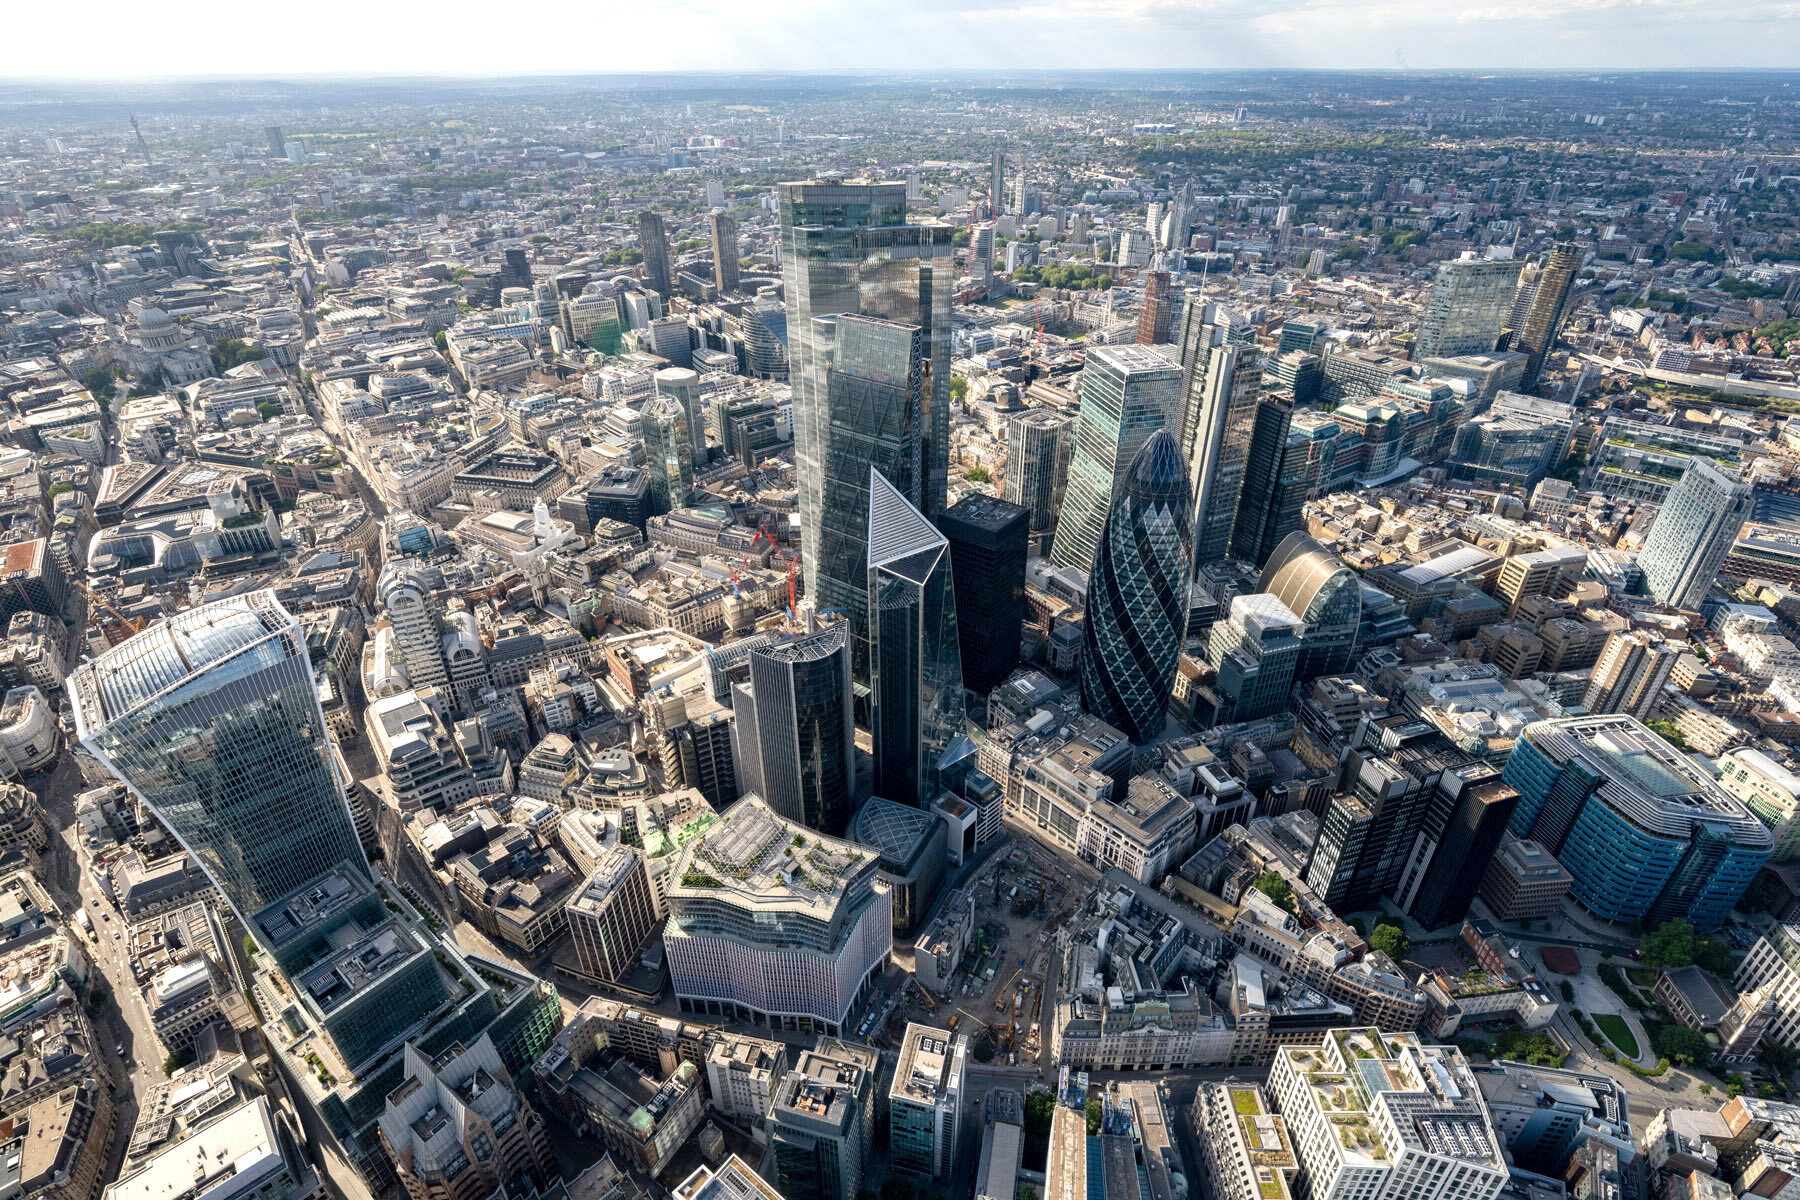  London Aerial Photography - July 2020 © Joas Souza 